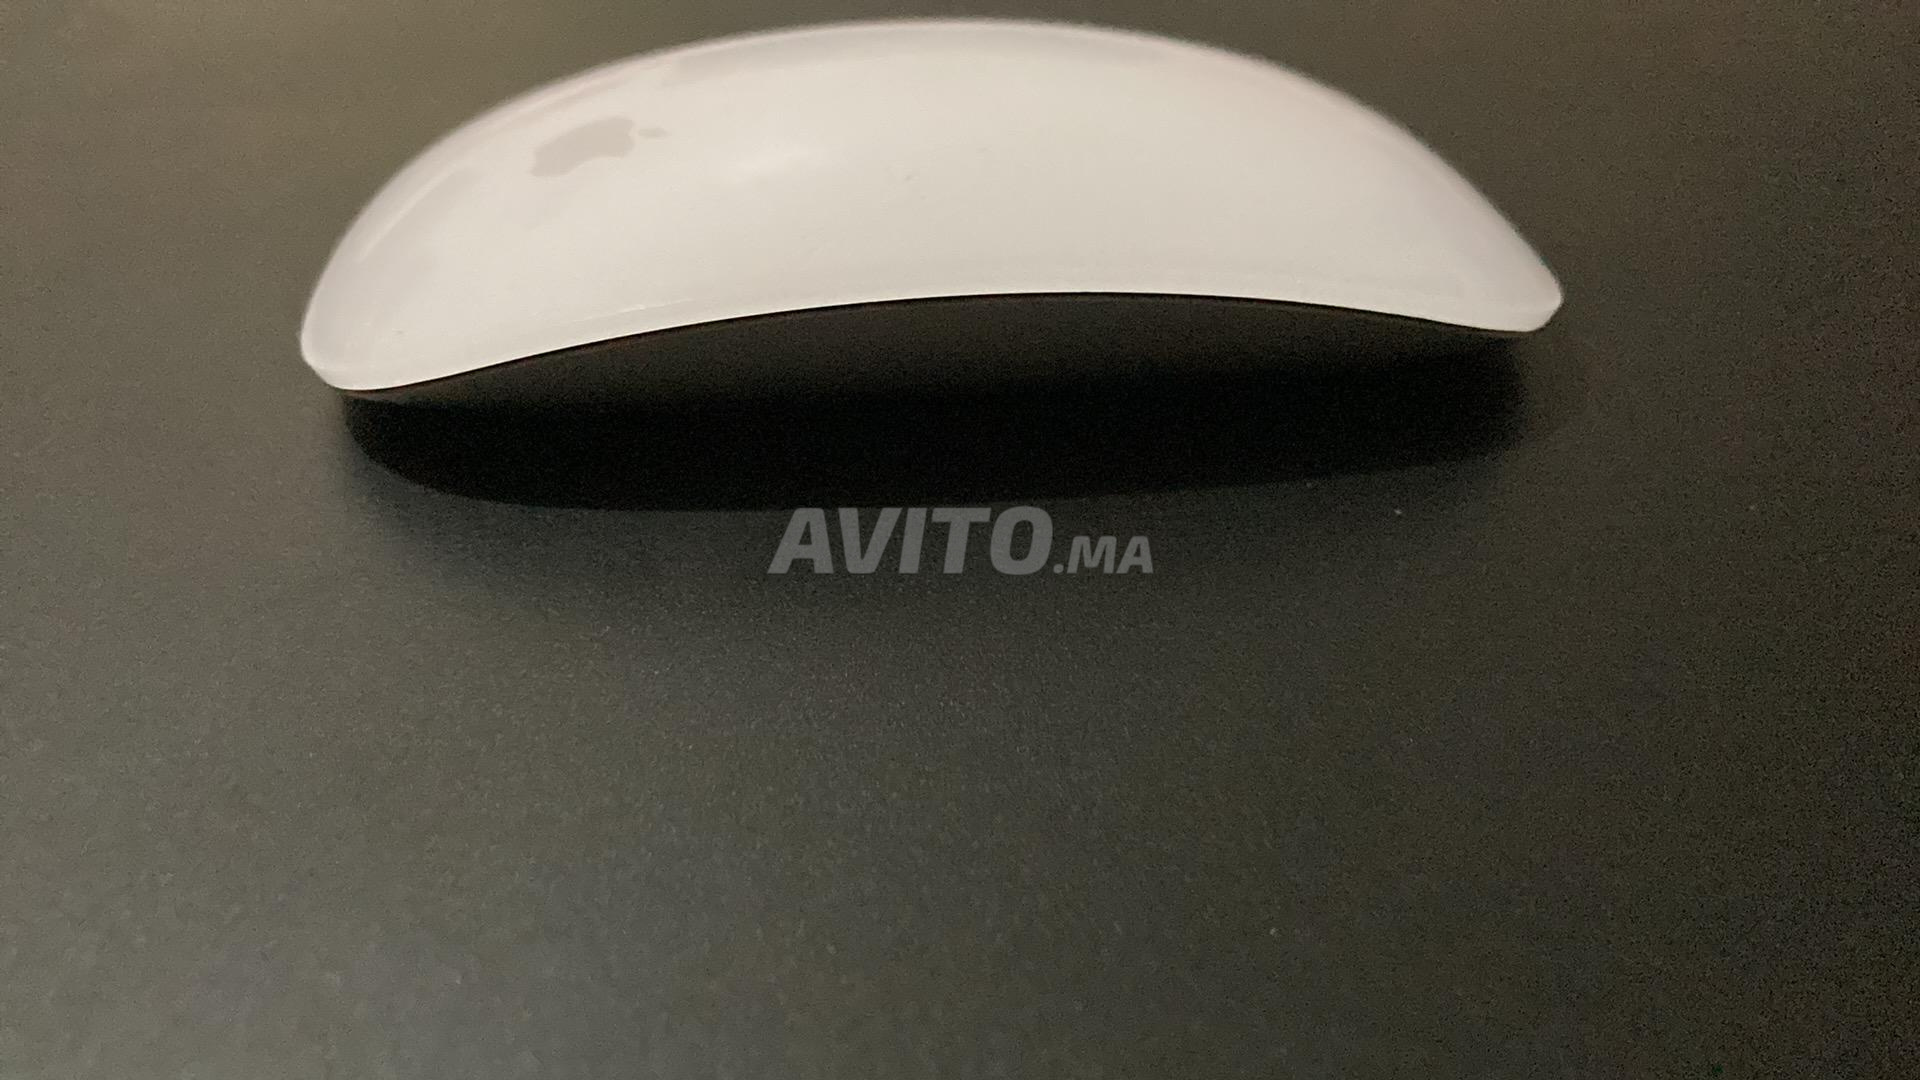 Apple Magic Mouse Surface Multi-Touch Blanc Souris 100% Originale Pour Mac  & iPad iOS à prix pas cher